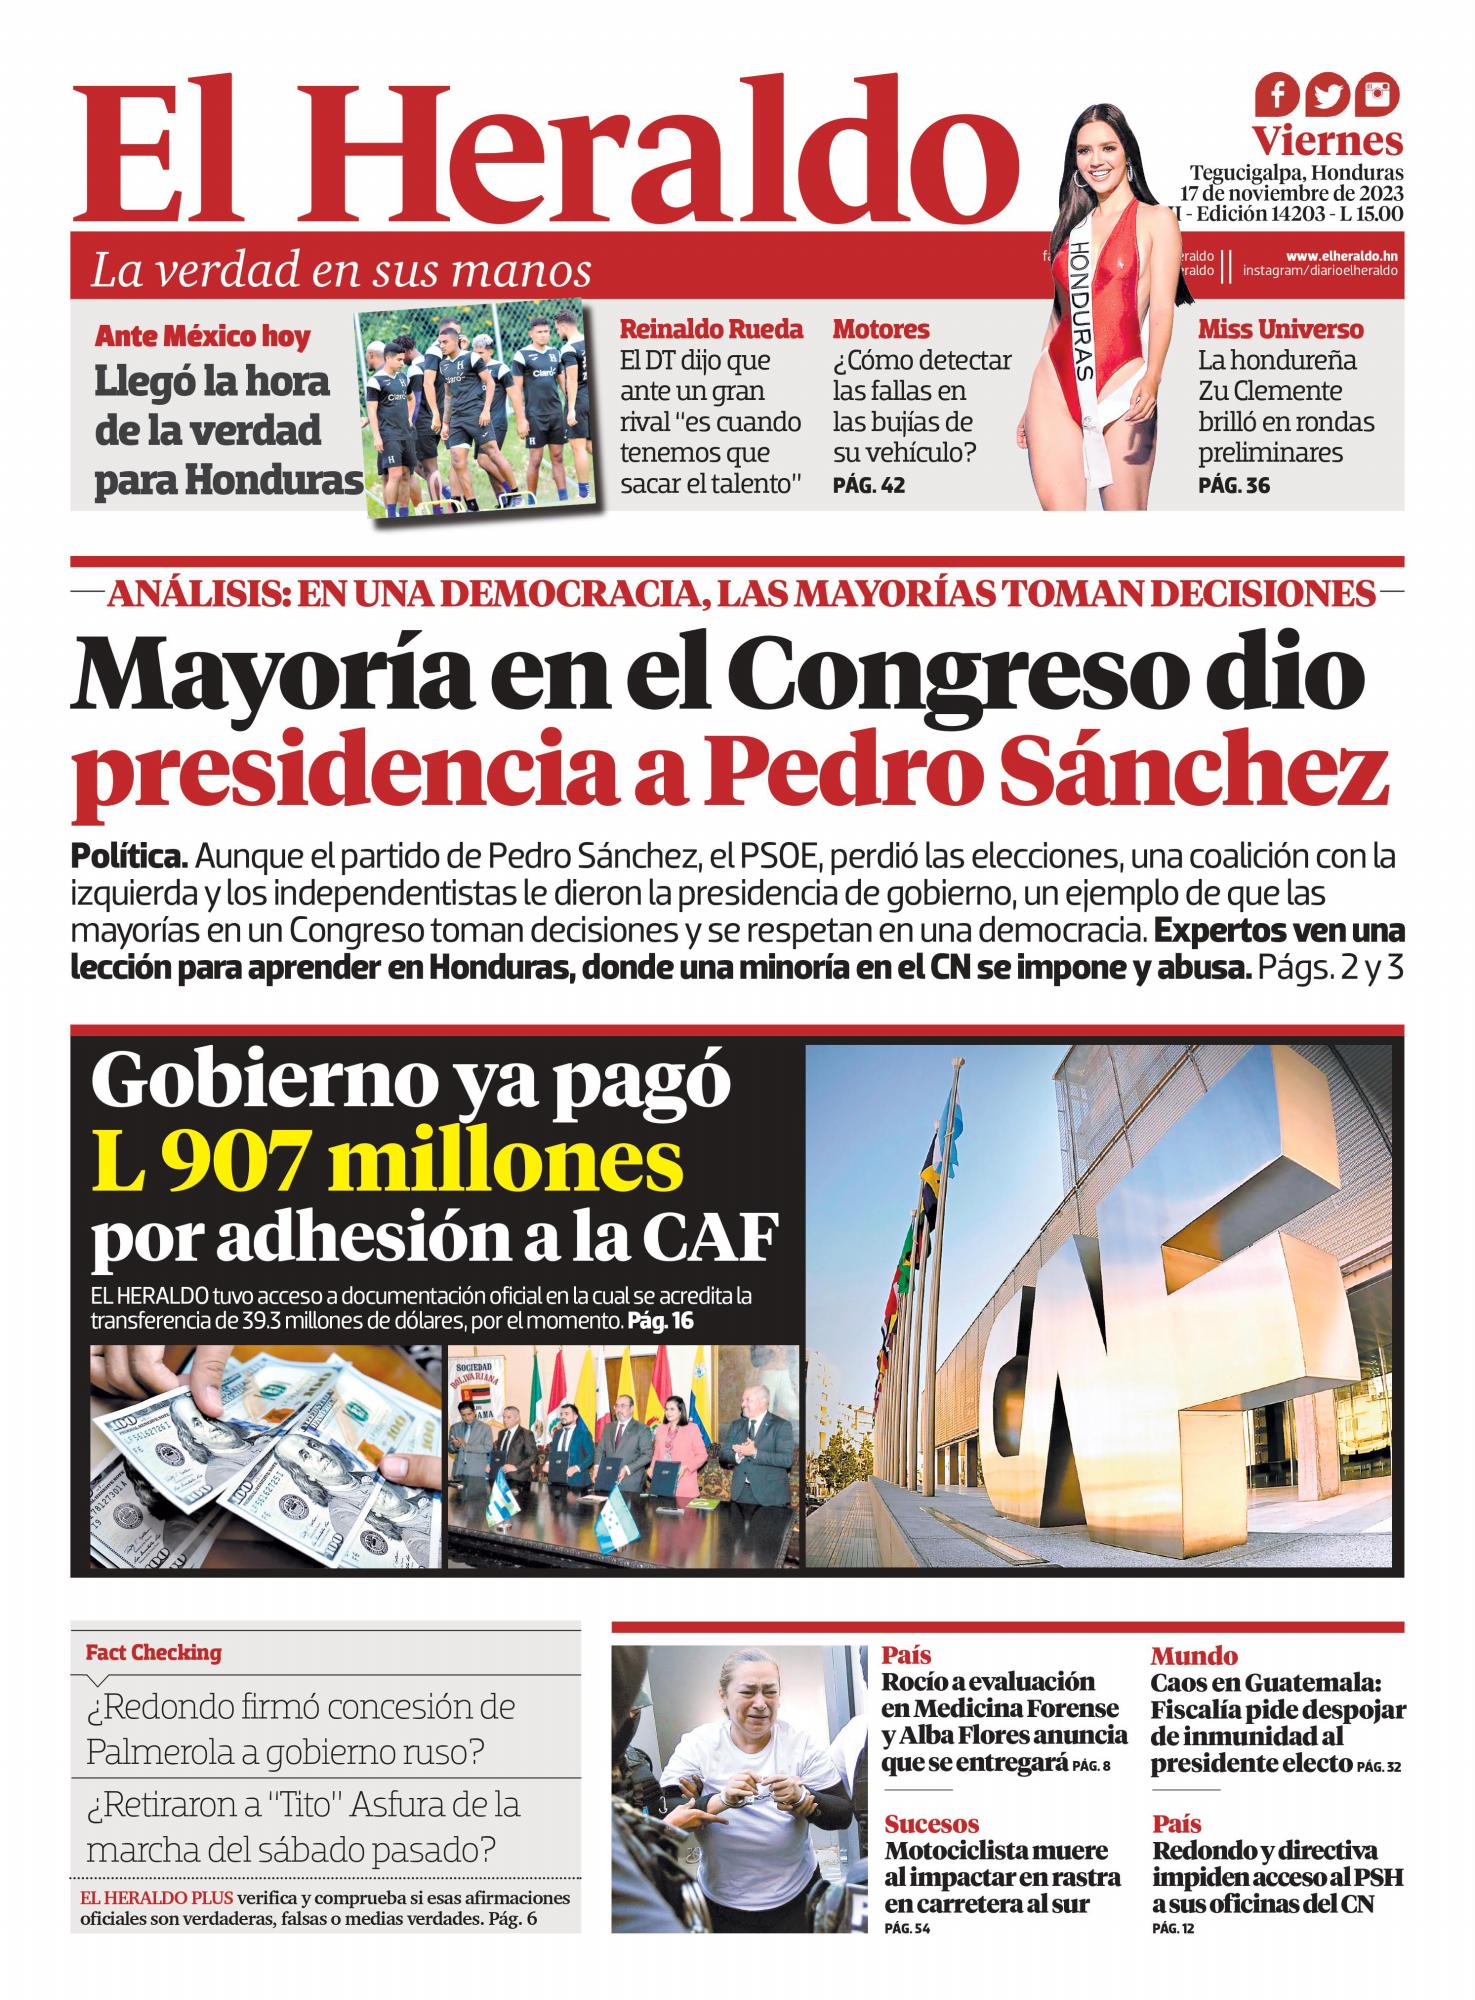 Mayoría en el Congreso dio presidencia a Pedro Sánchez